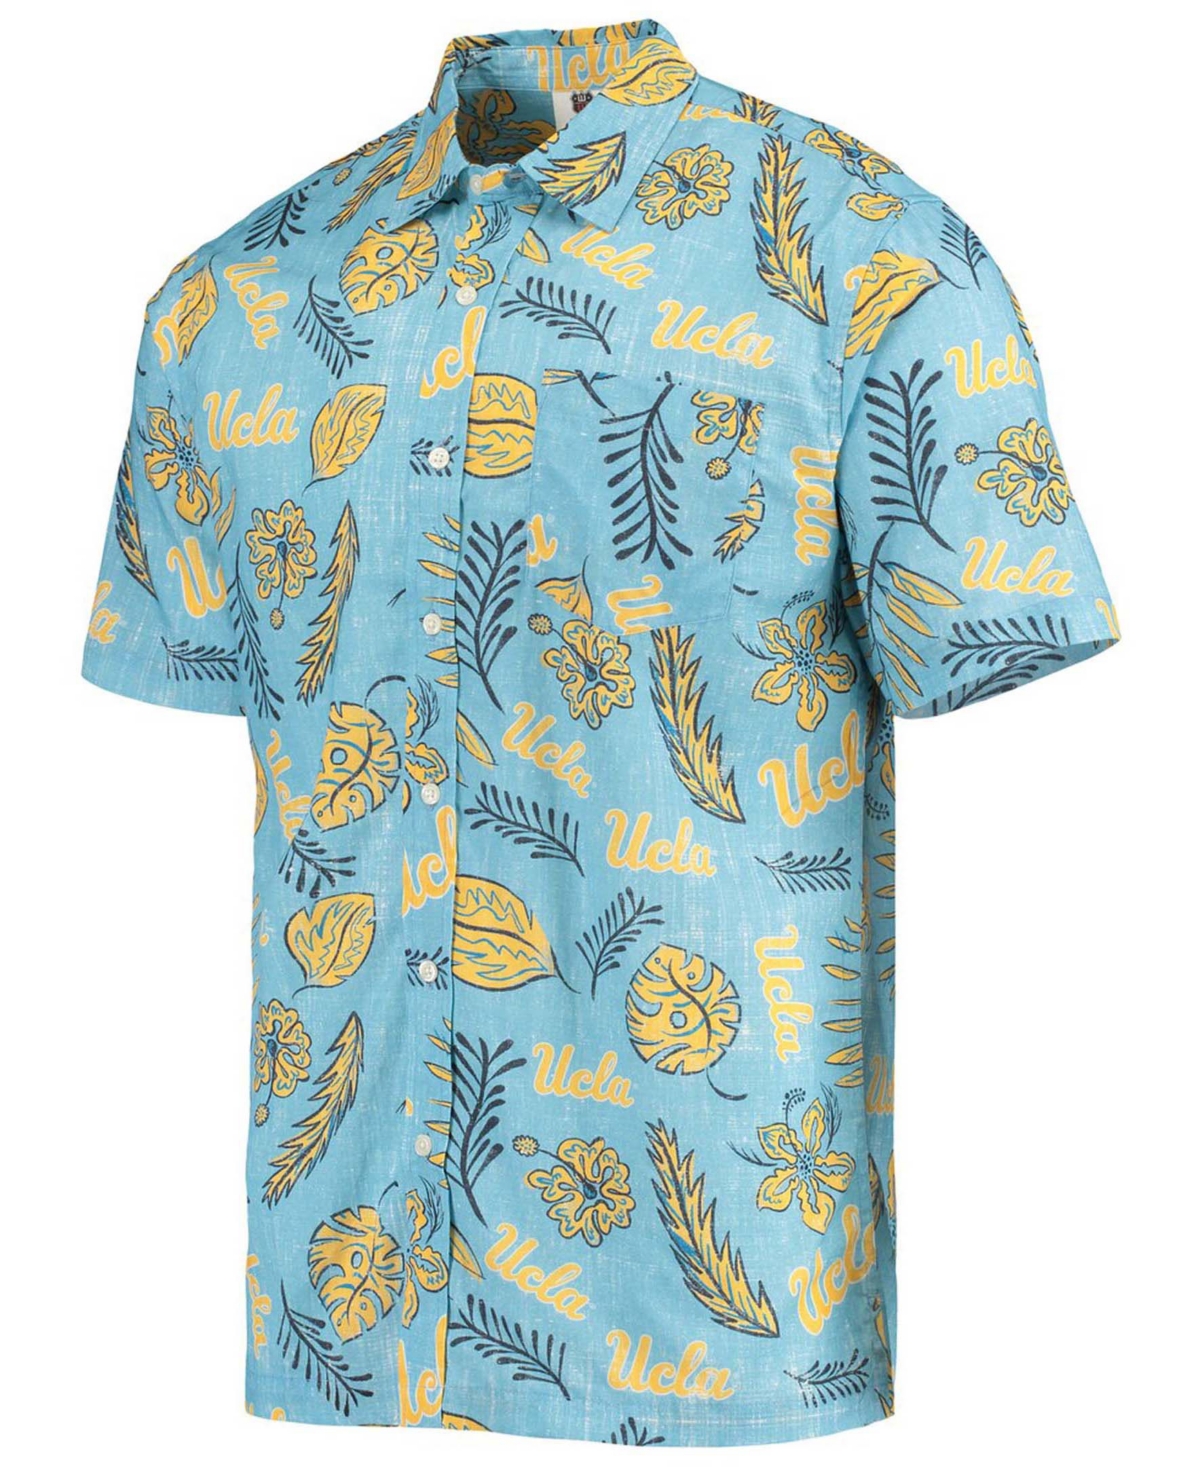 Shop Wes & Willy Men's Light Blue Ucla Bruins Vintage-like Floral Button-up Shirt